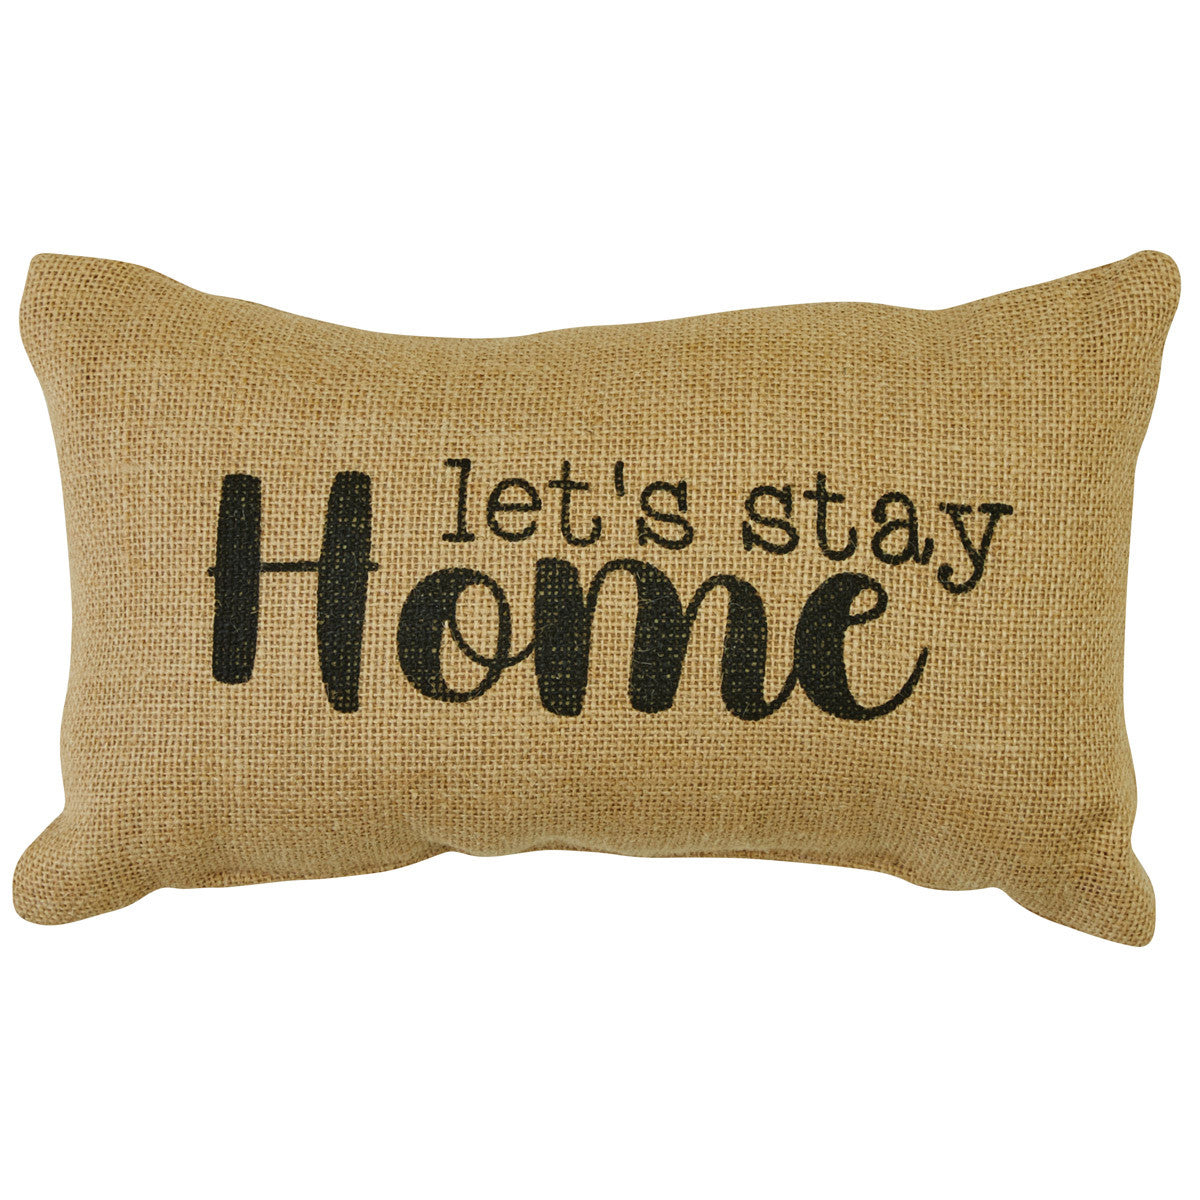 Let's Stay Home Sentiment Pillow - 7x12 Park Designs